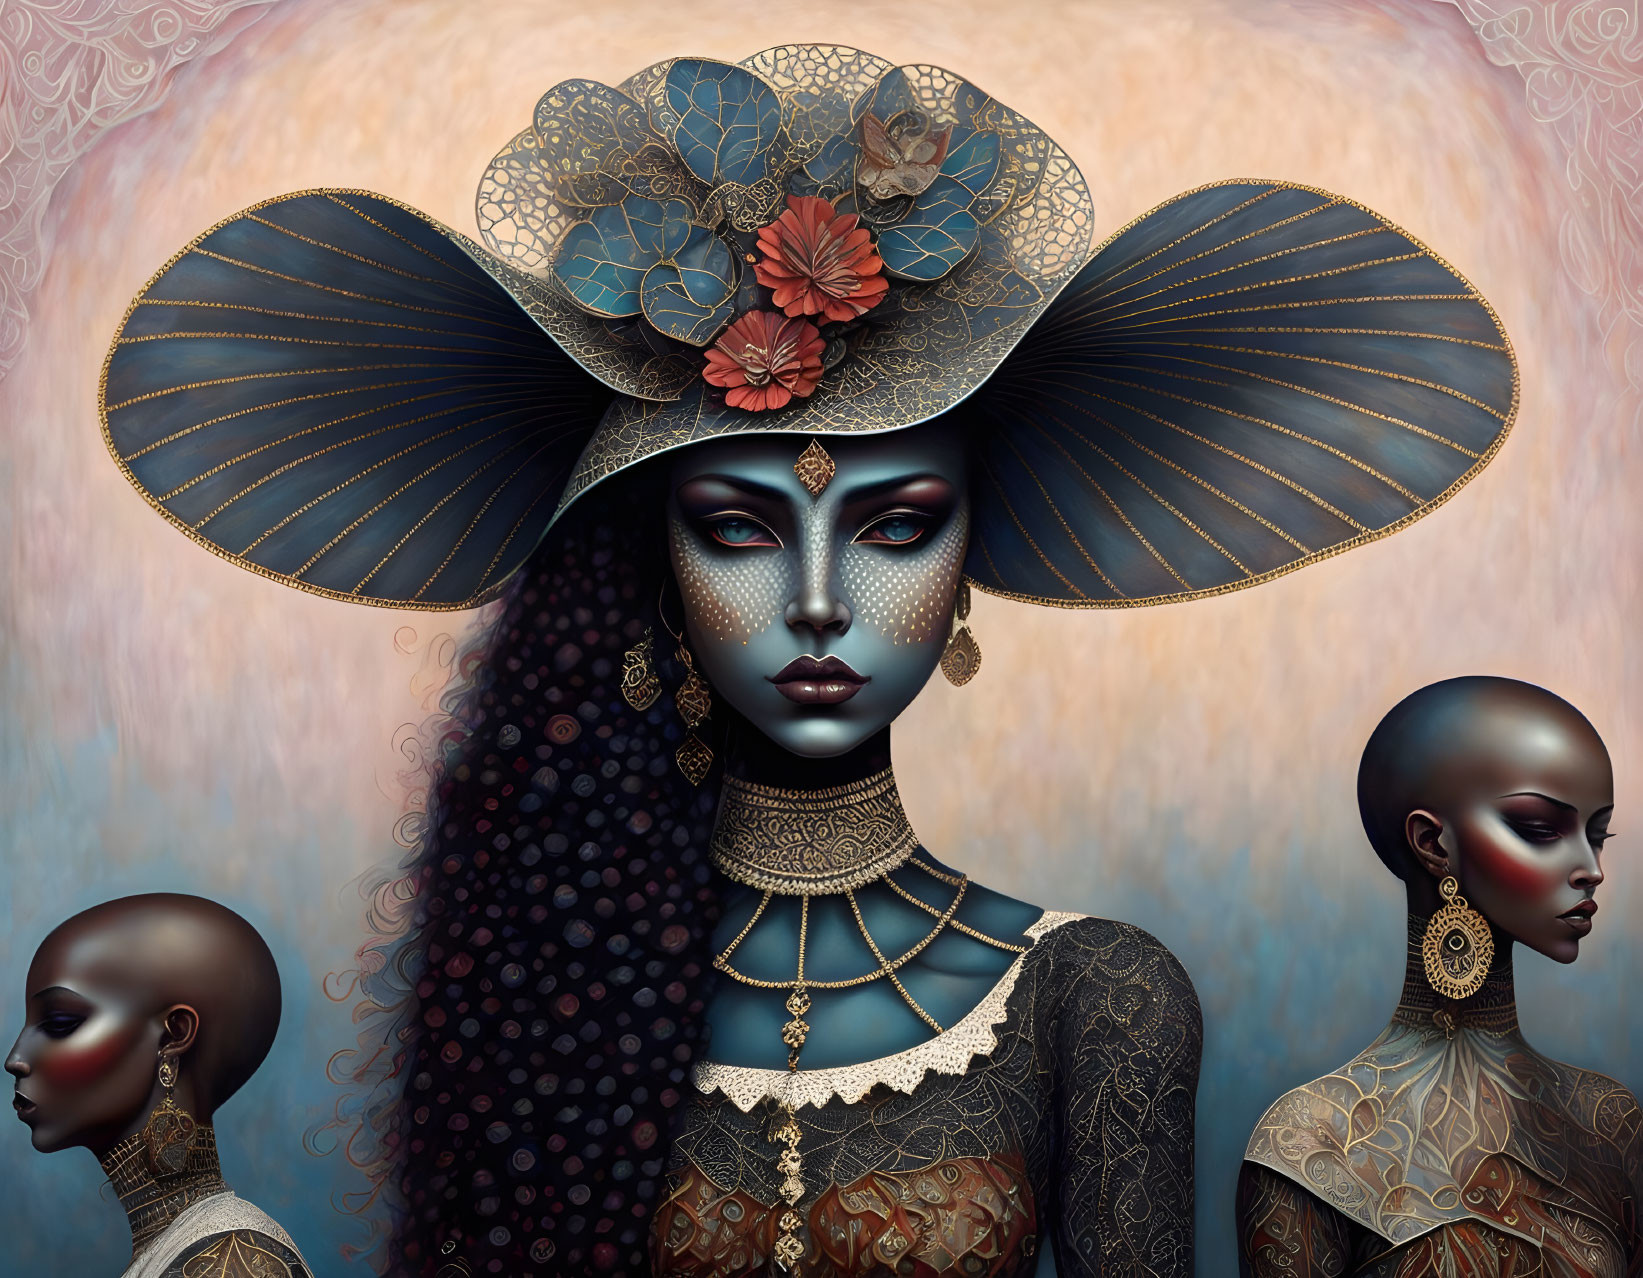 Three Stylized Women with Elaborate Headwear and Jewelry